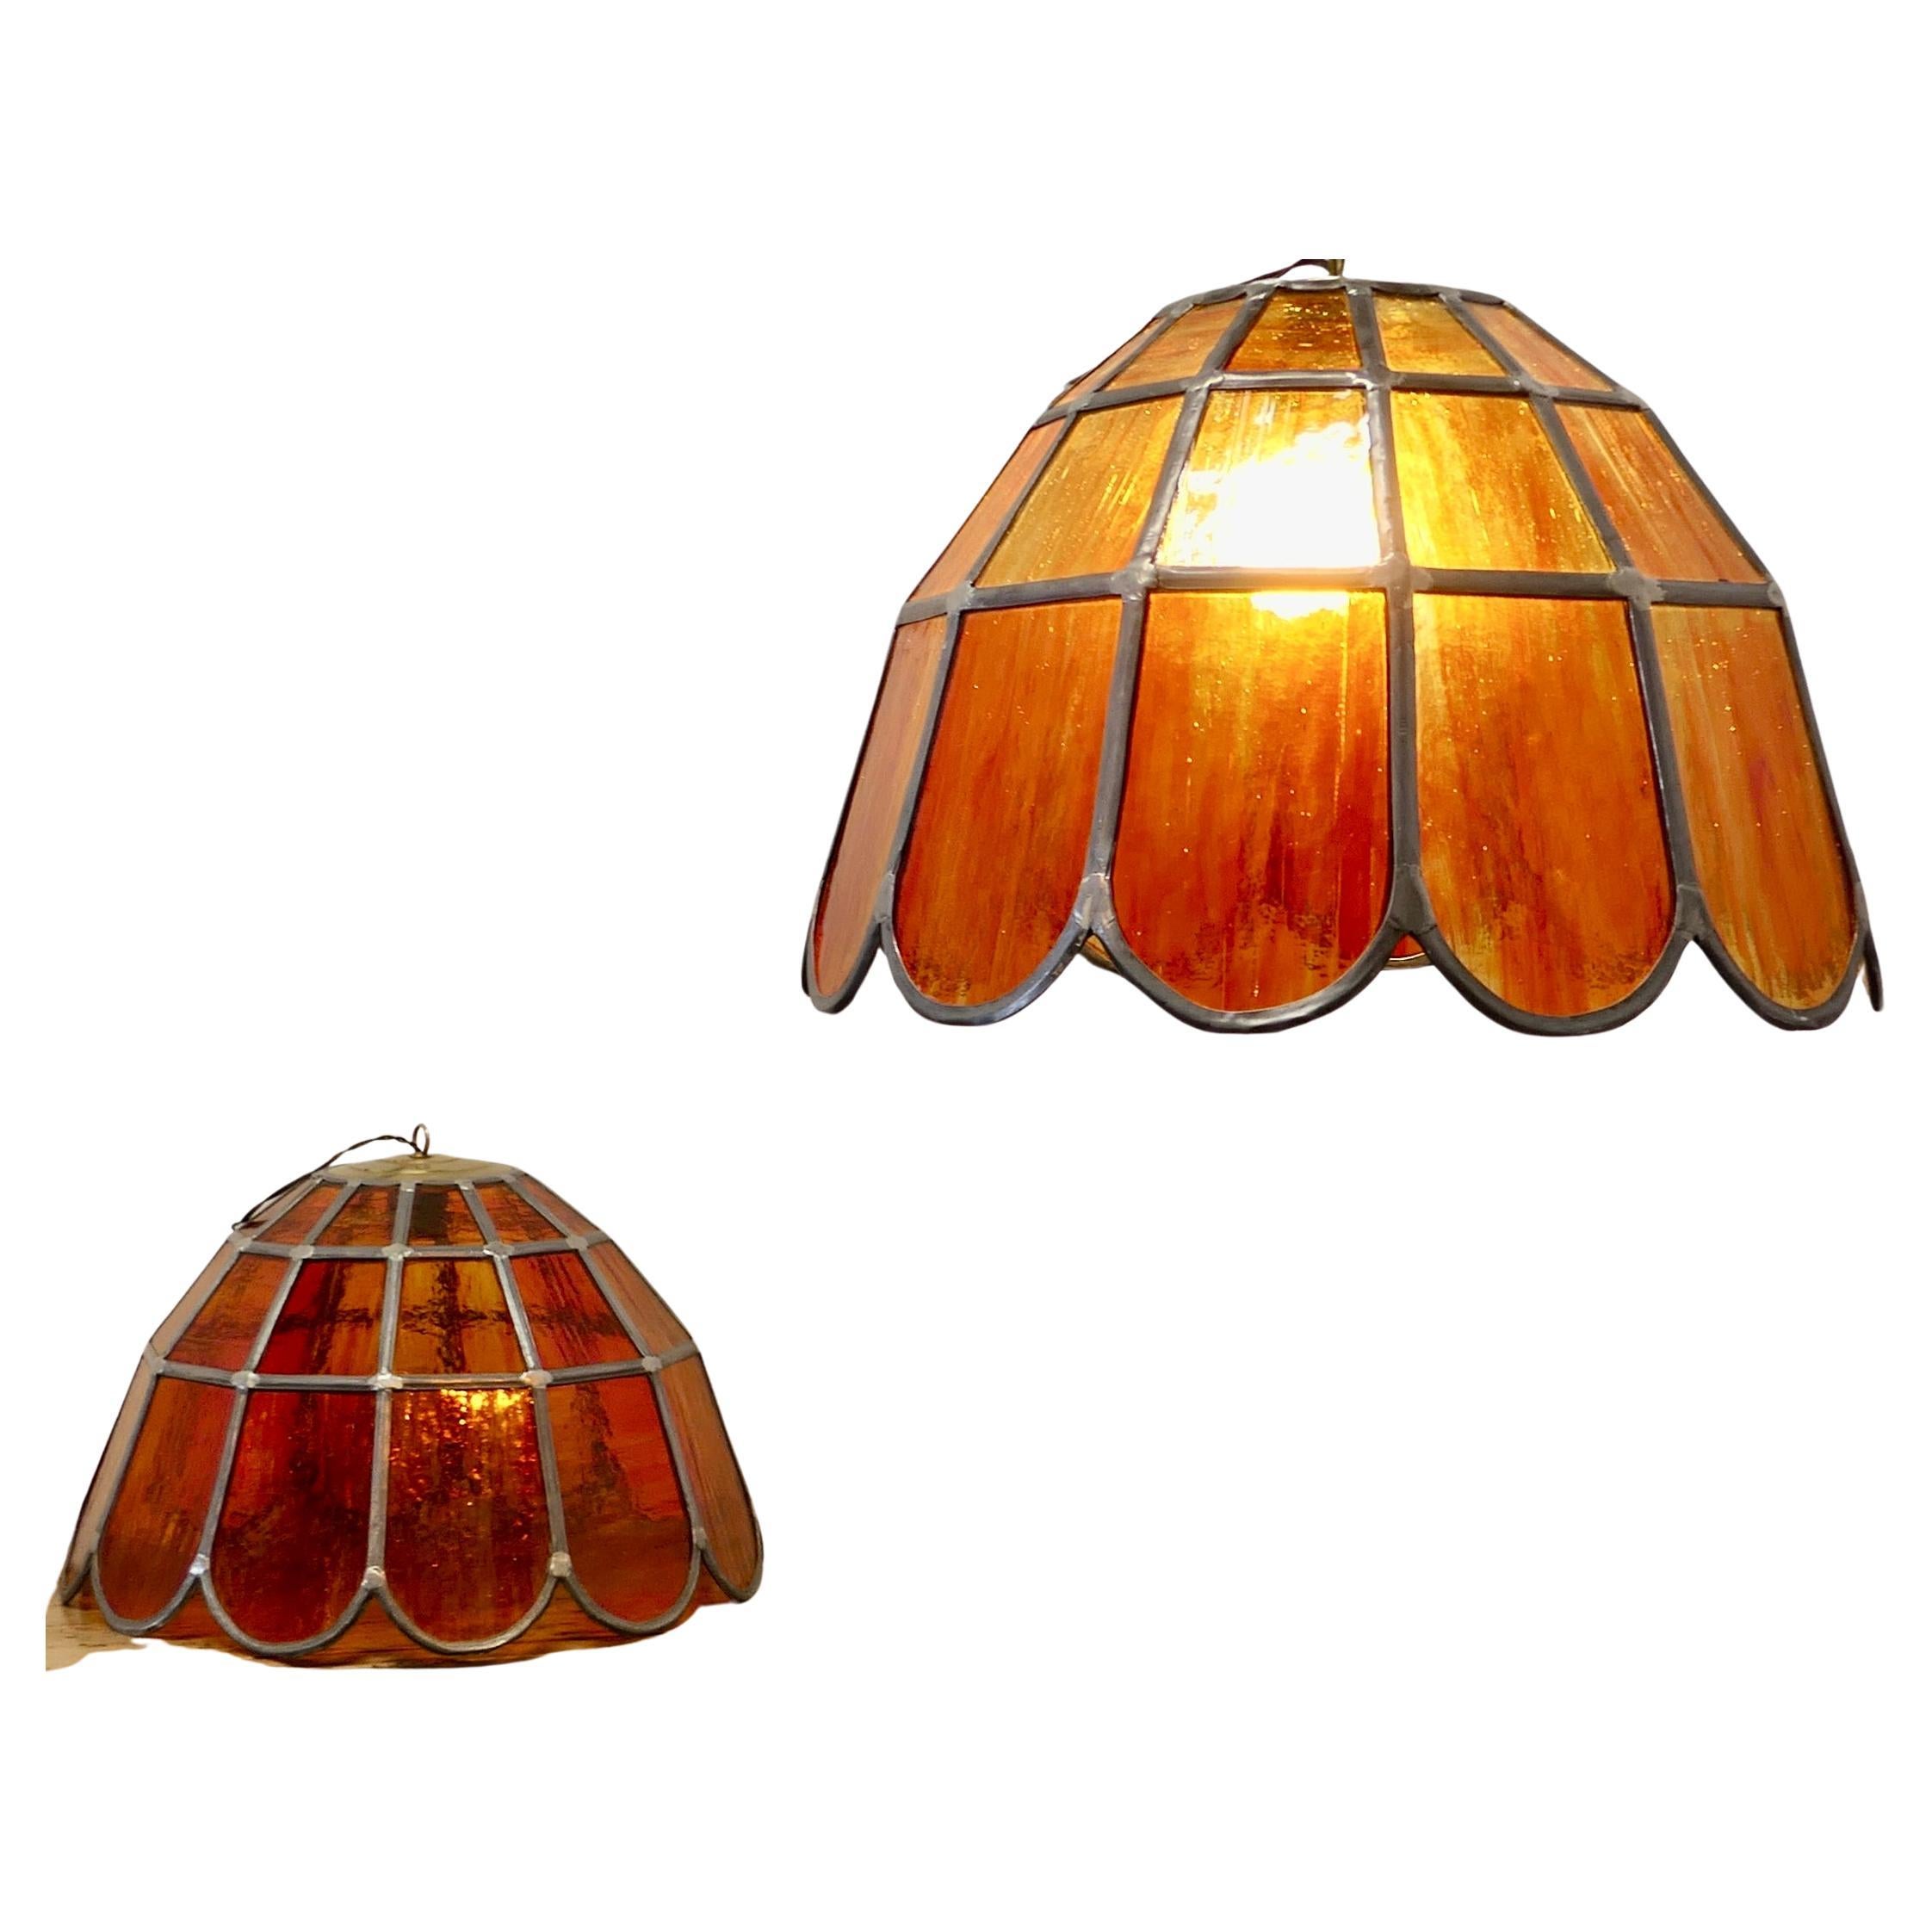  Paire de grandes lampes suspendues en verre ambré au plomb de style Arts and Crafts   